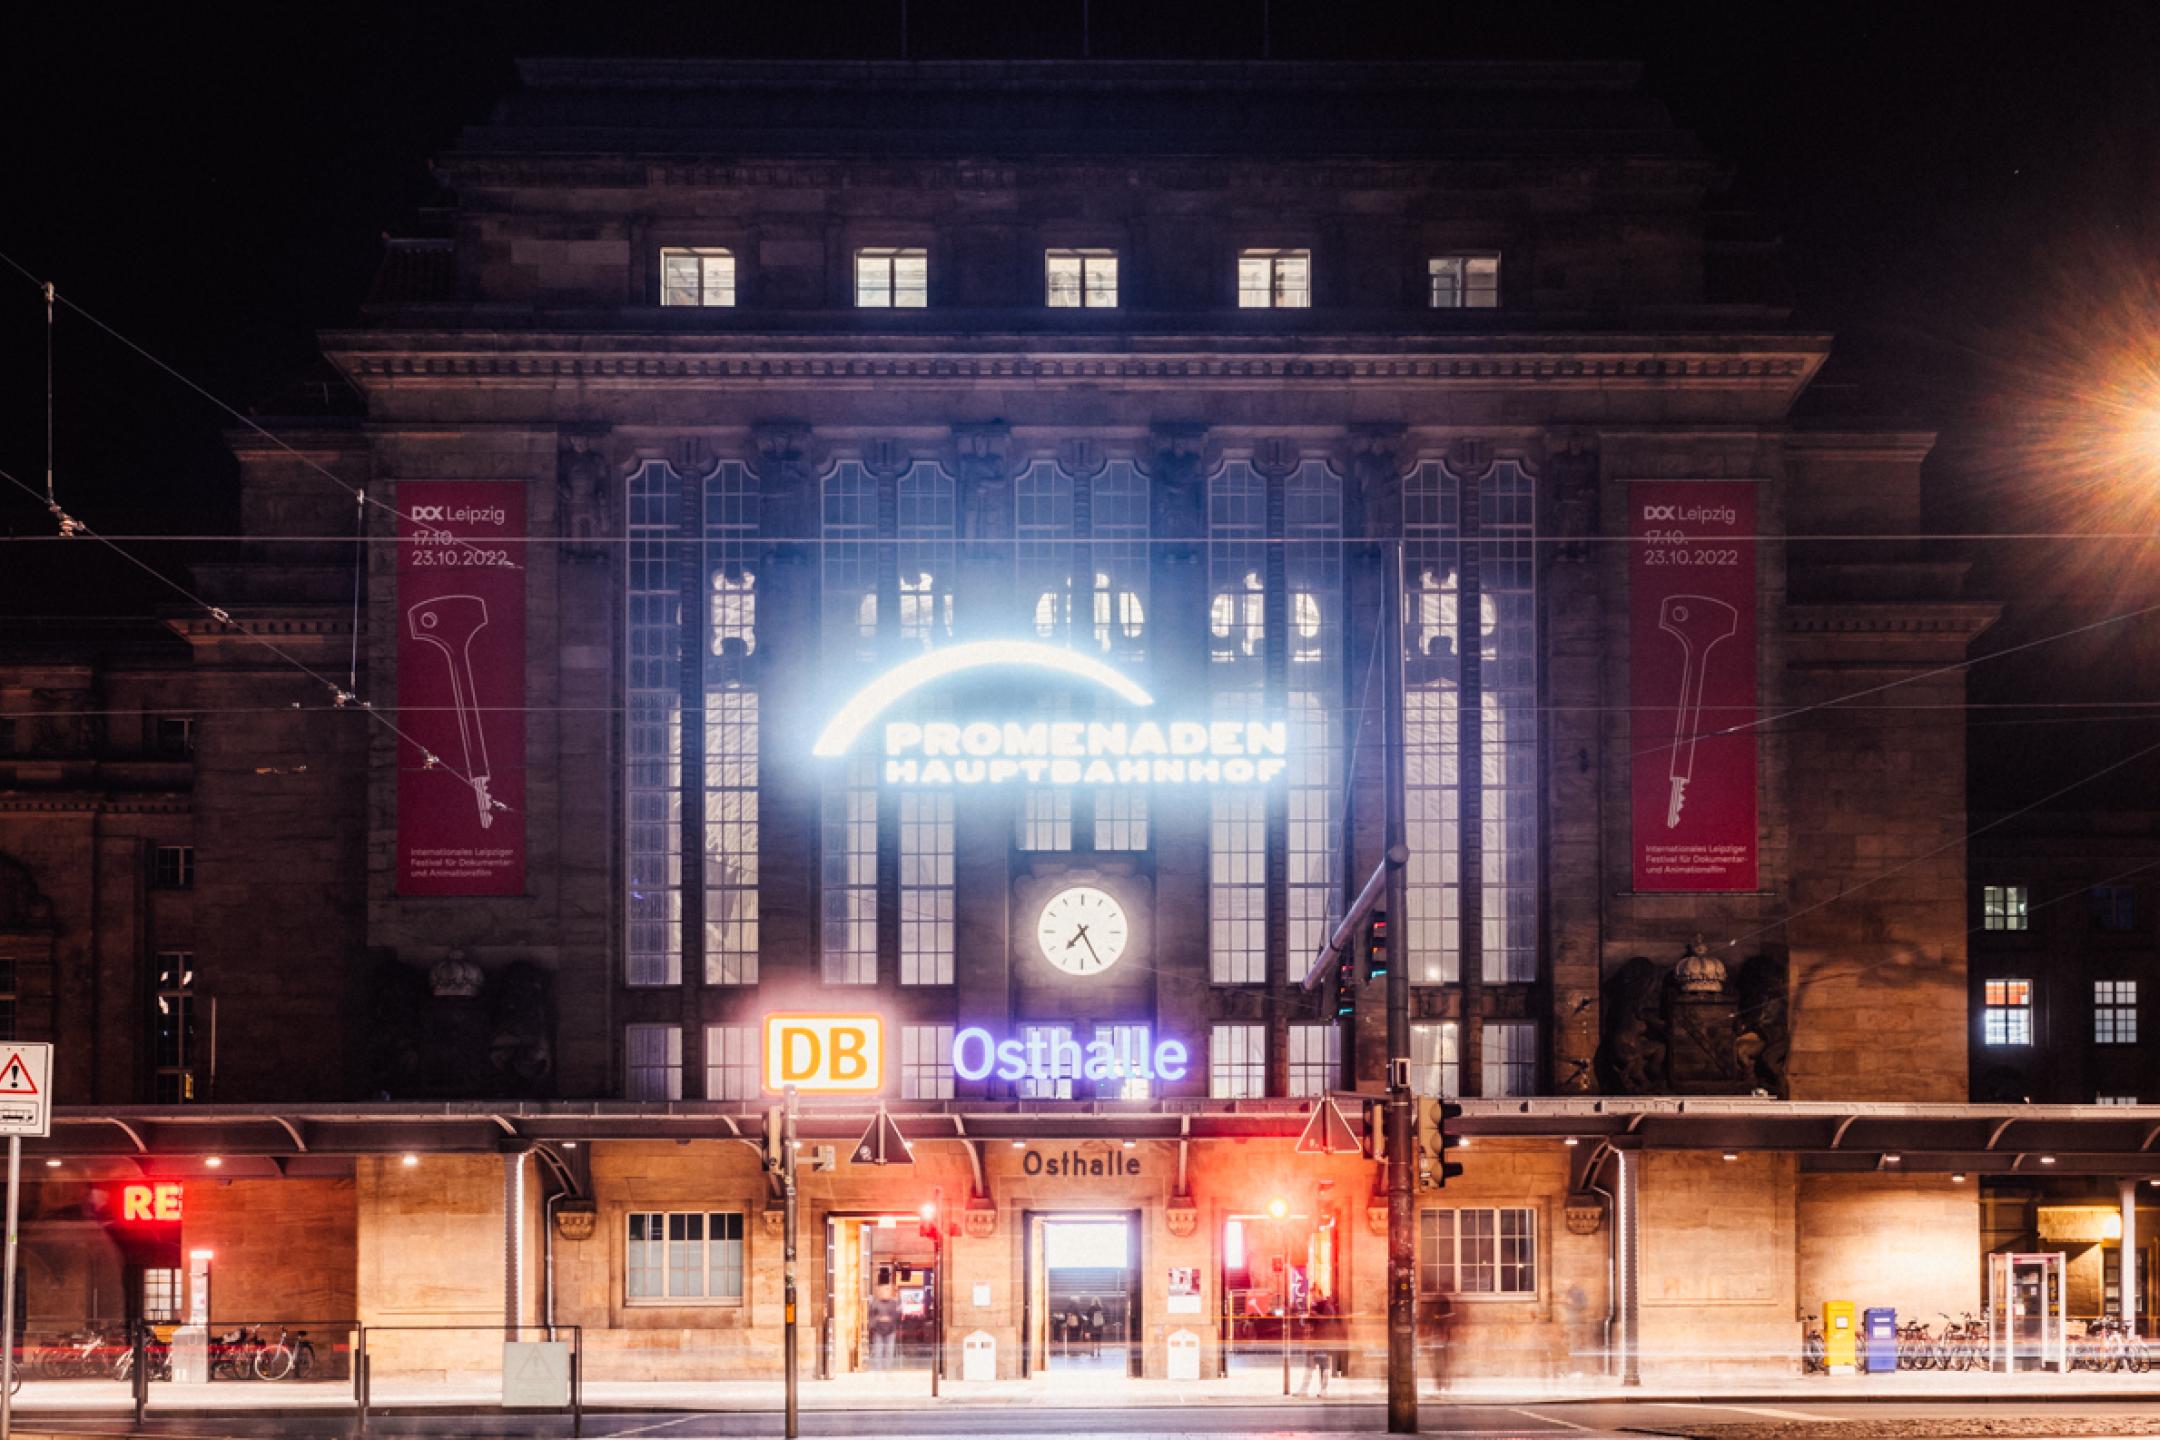 Das Hauptbahnhof-Gebäude in Leipzig von außen bei Nacht. Über dem Eingang leuchtet das Schild "Osthalle".